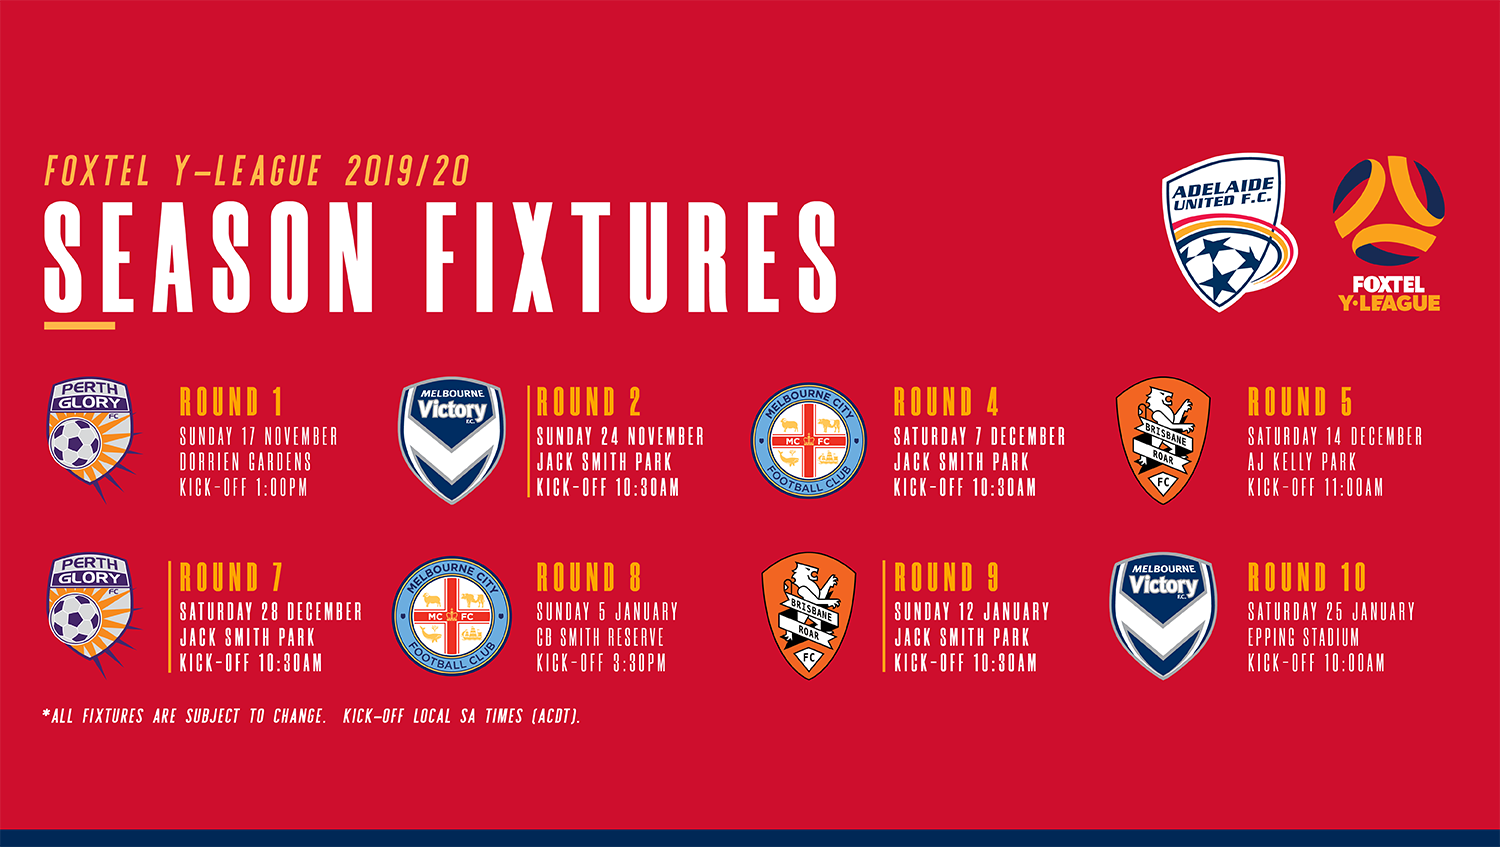 Adelaide United Foxtel Y-League 2019/20 fixtures